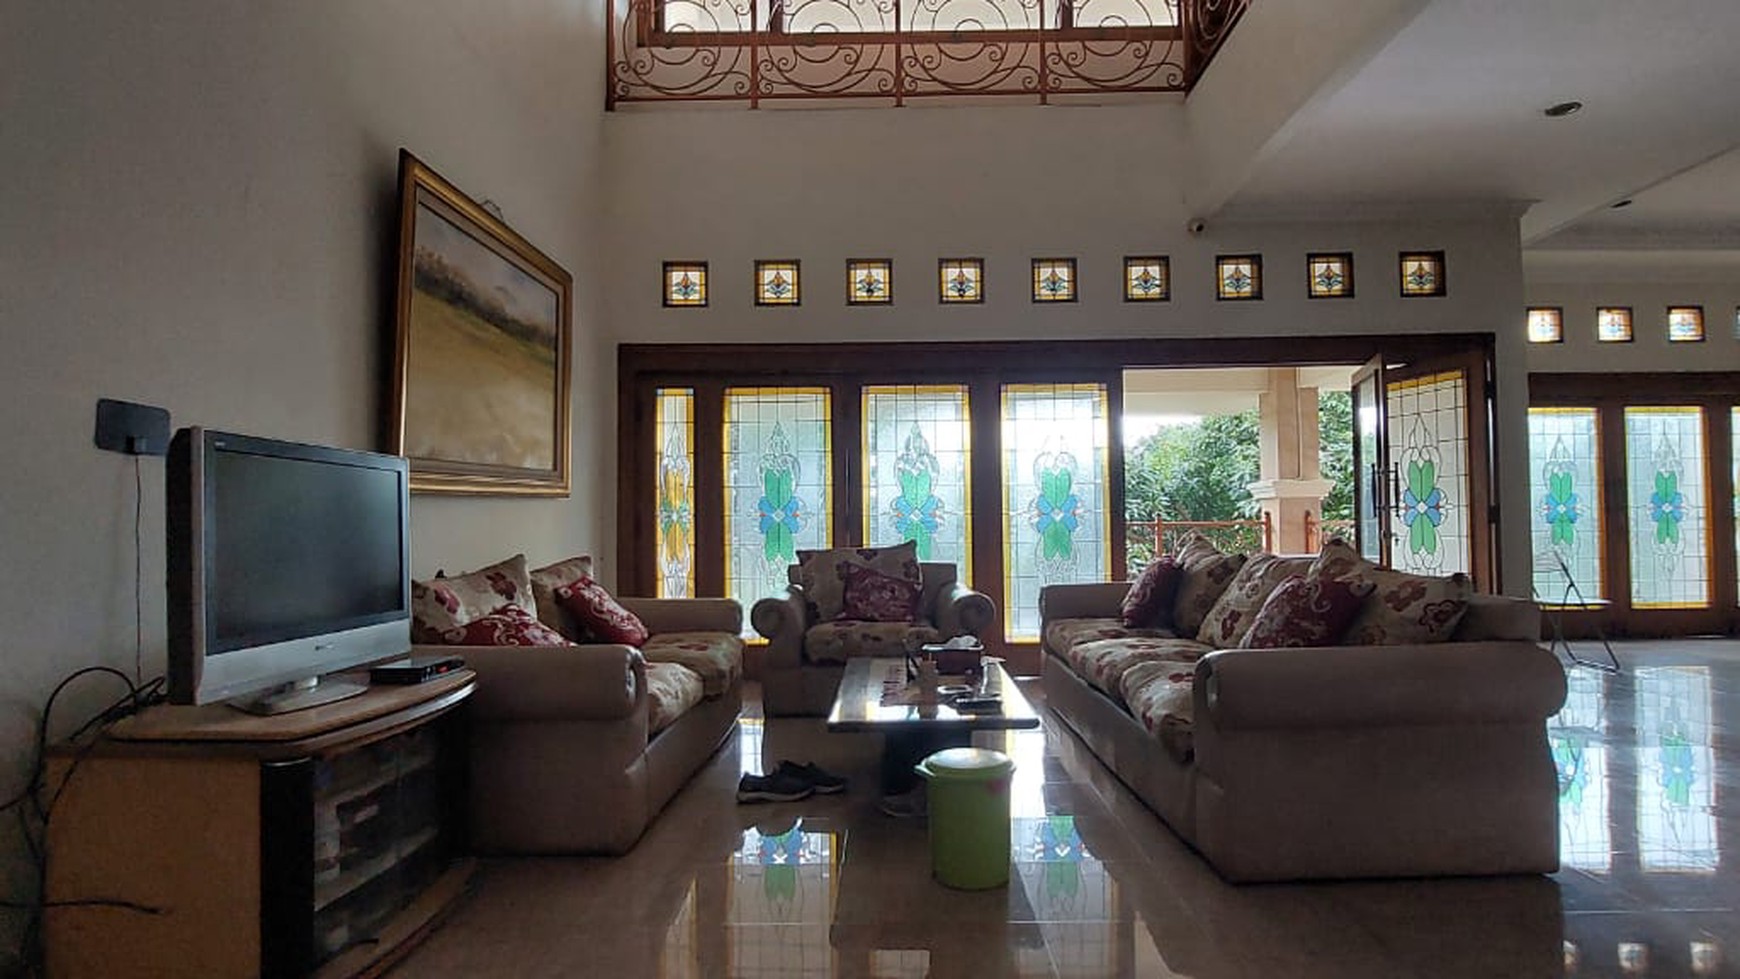 Rumah Asri Cantik Bagus Lokasi Strategis Harga Murah di Bintaro  Pesanggrahan